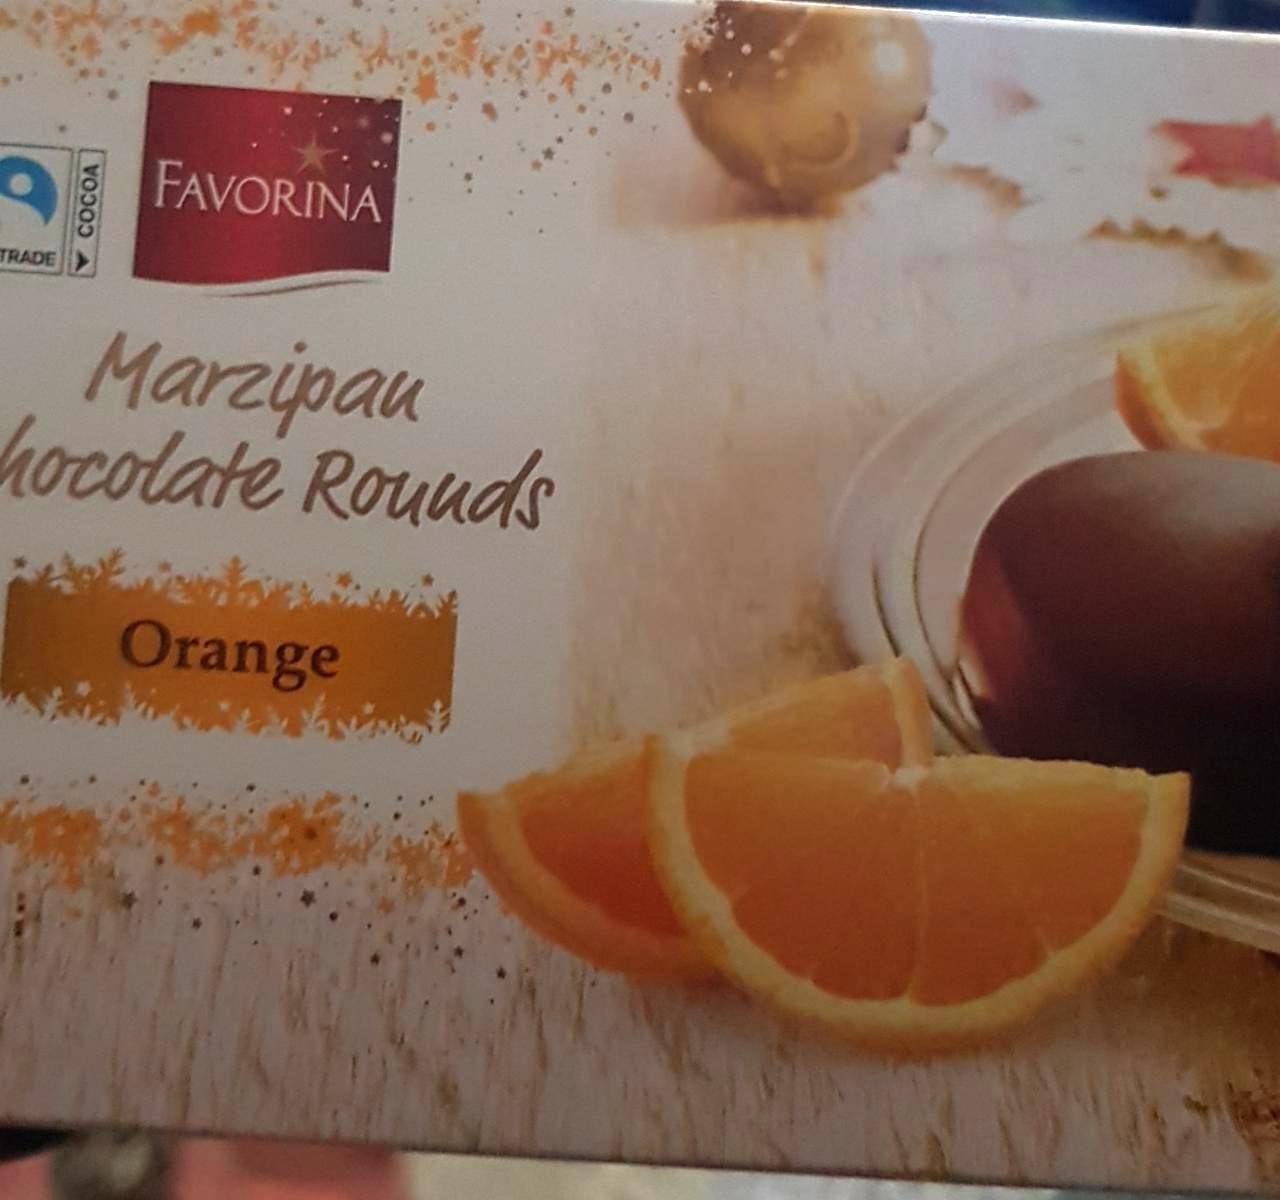 Képek - Narancs marcipán karikák Favorina